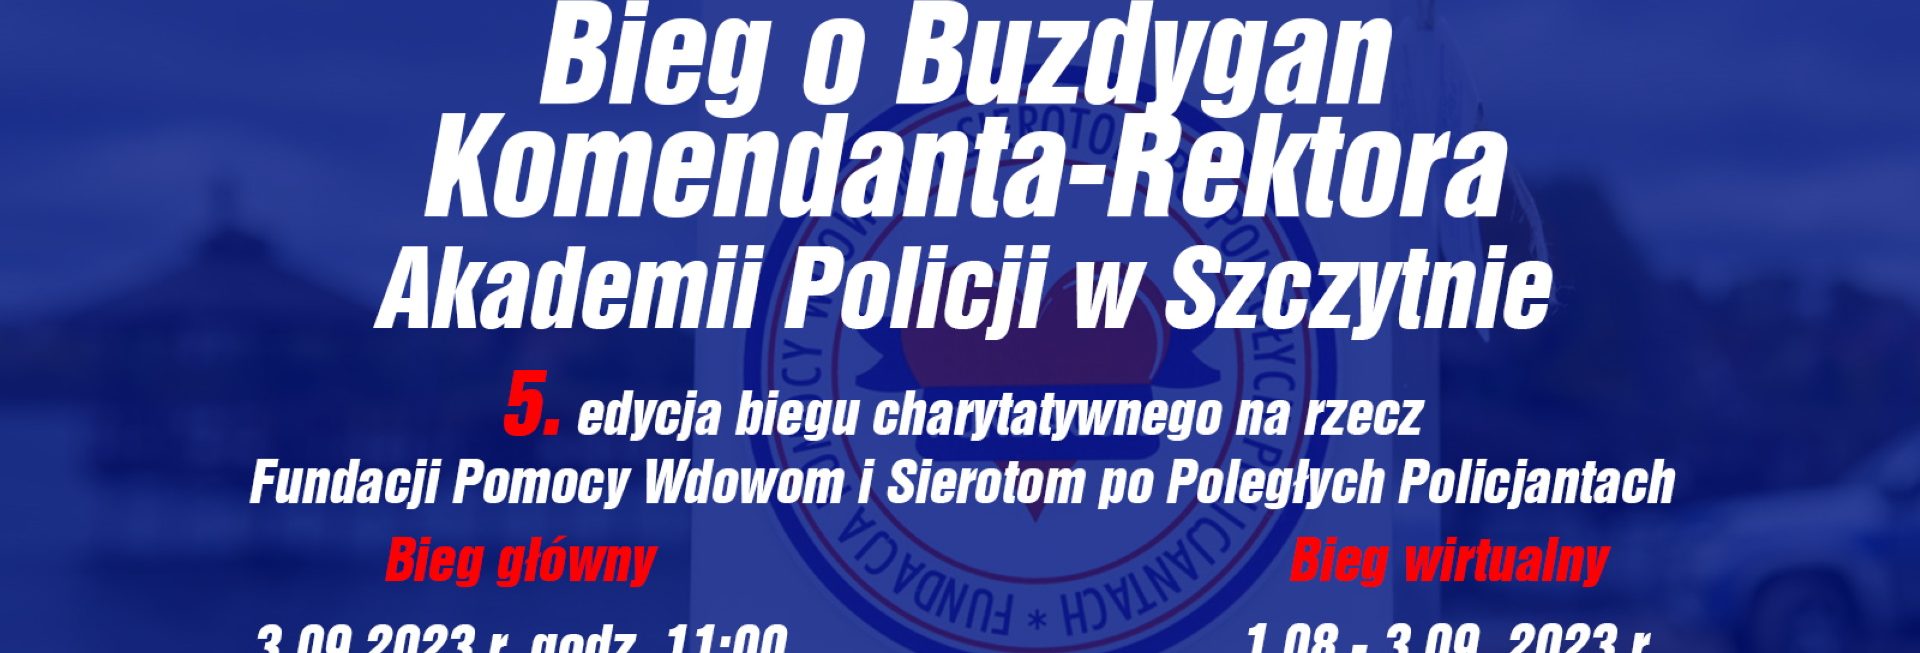 Plakat zapraszający w niedzielę 3 września 2023 r. do Szczytna na Bieg o Buzdygan Komendanta-Rektora Akademii Policji w Szczytnie 2023.